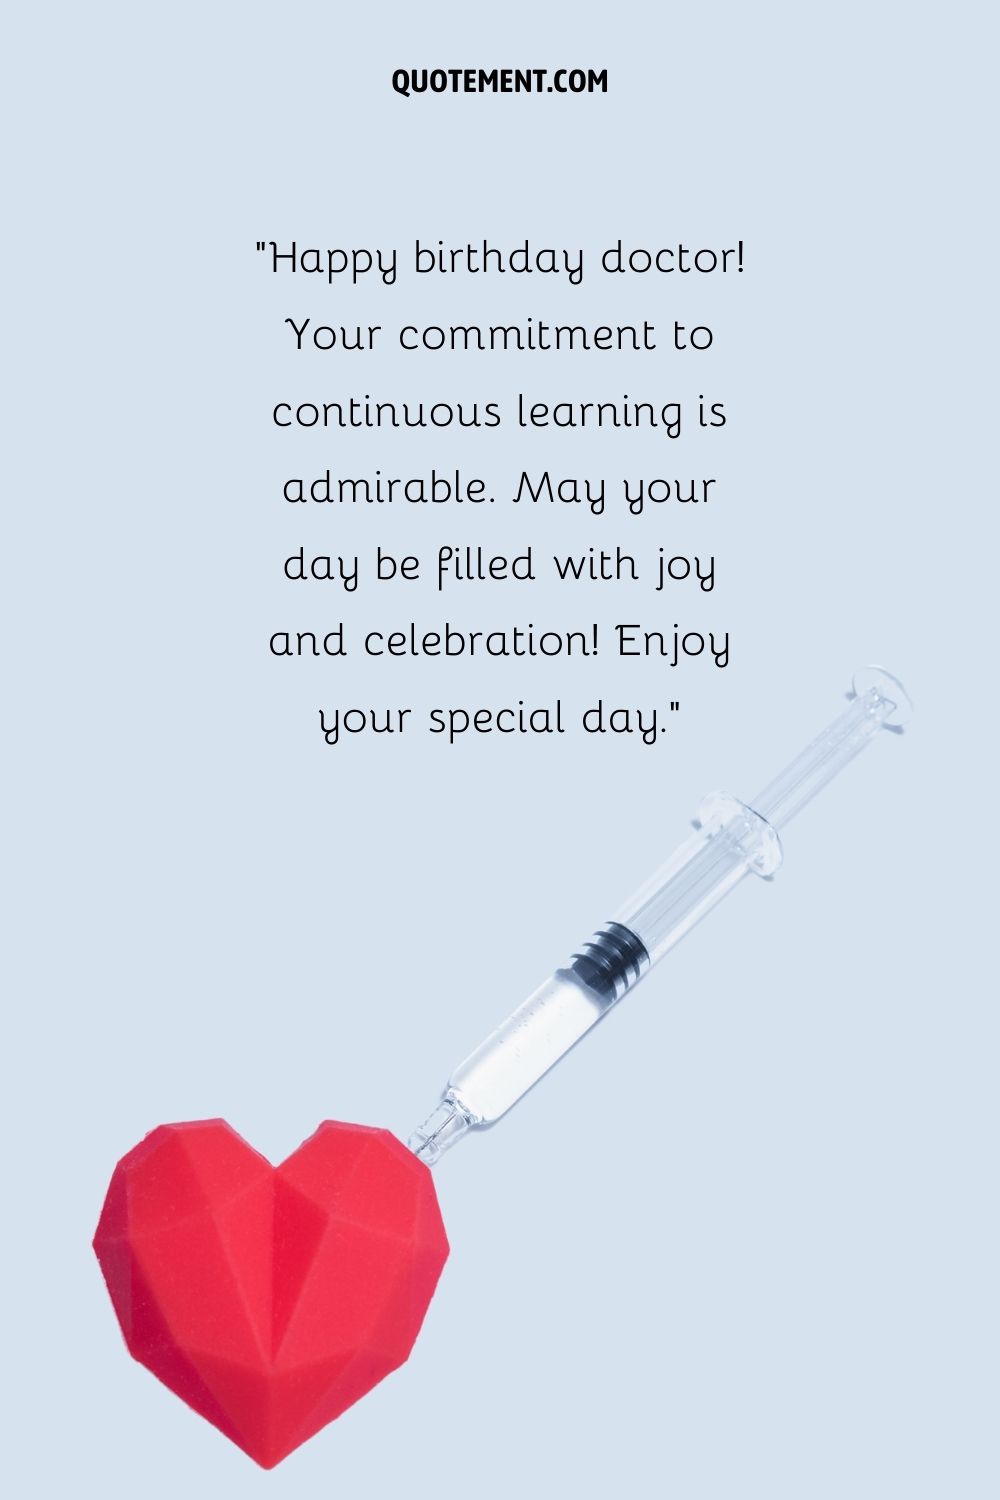 una inyección y un emoji de corazón rojo representando el mejor deseo de feliz cumpleaños doctor